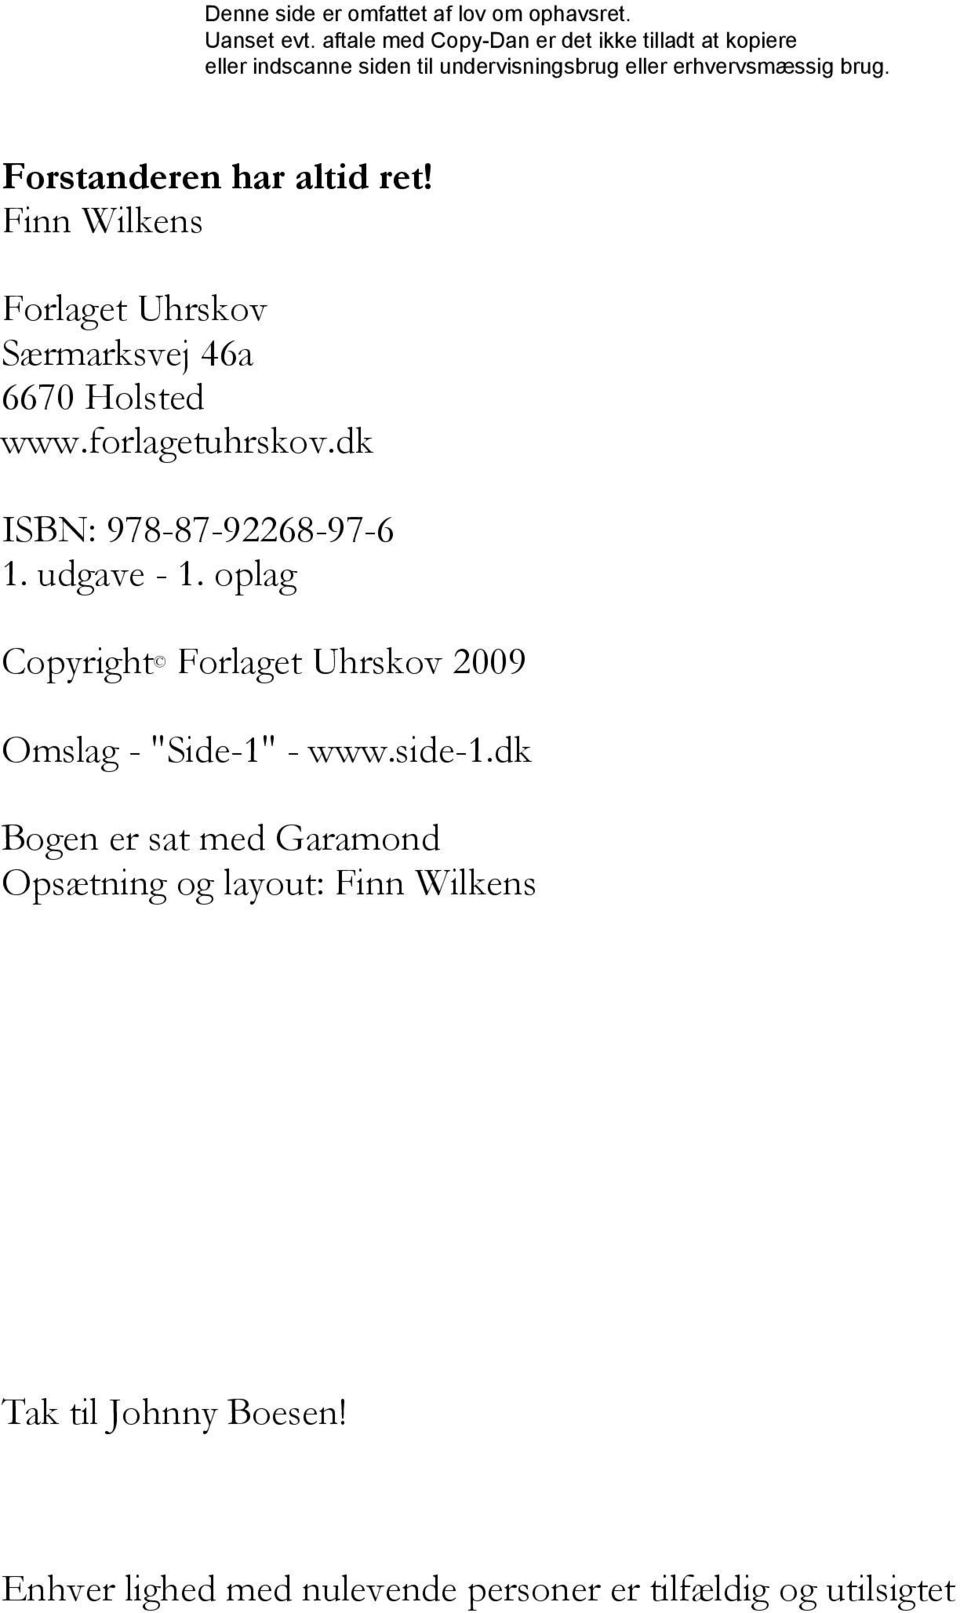 oplag Copyright Forlaget Uhrskov 2009 Omslag - "Side-1" - www.side-1.